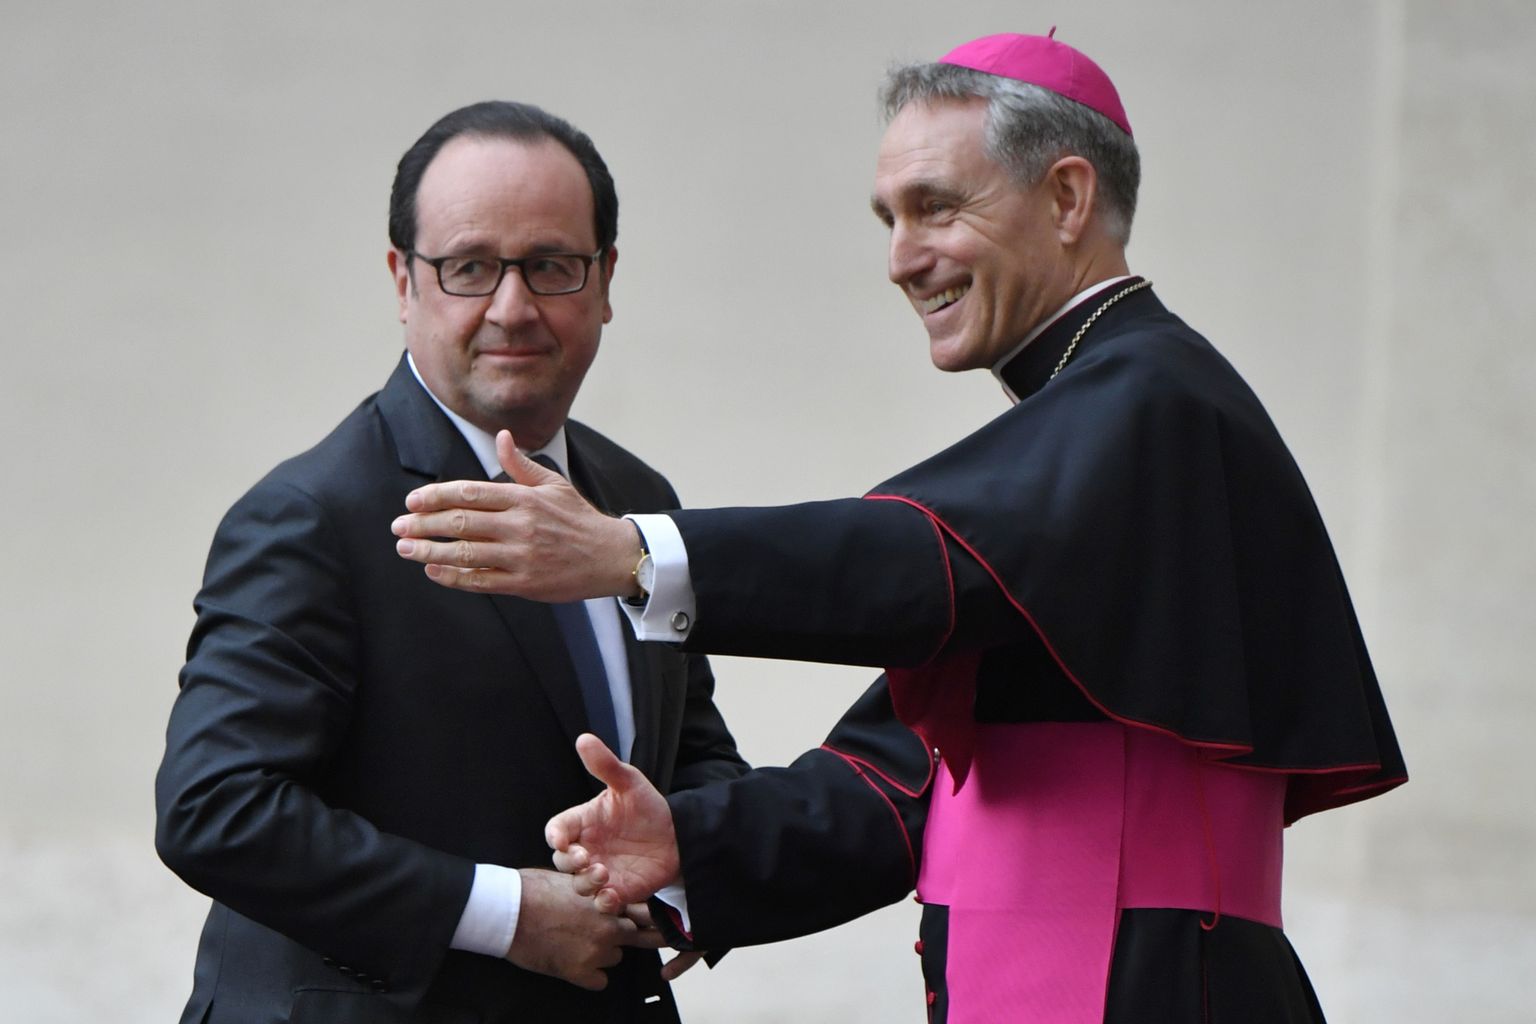 Eile käisid Rooma lepingu aastapäevaks valmistuvad riigipead ja valitsusjuhid kohtumas paavstiga. Pildil juhatab Prantsusmaa riigipeale Francois Hollande'ile teed peapiiskop Georg Gänswein.